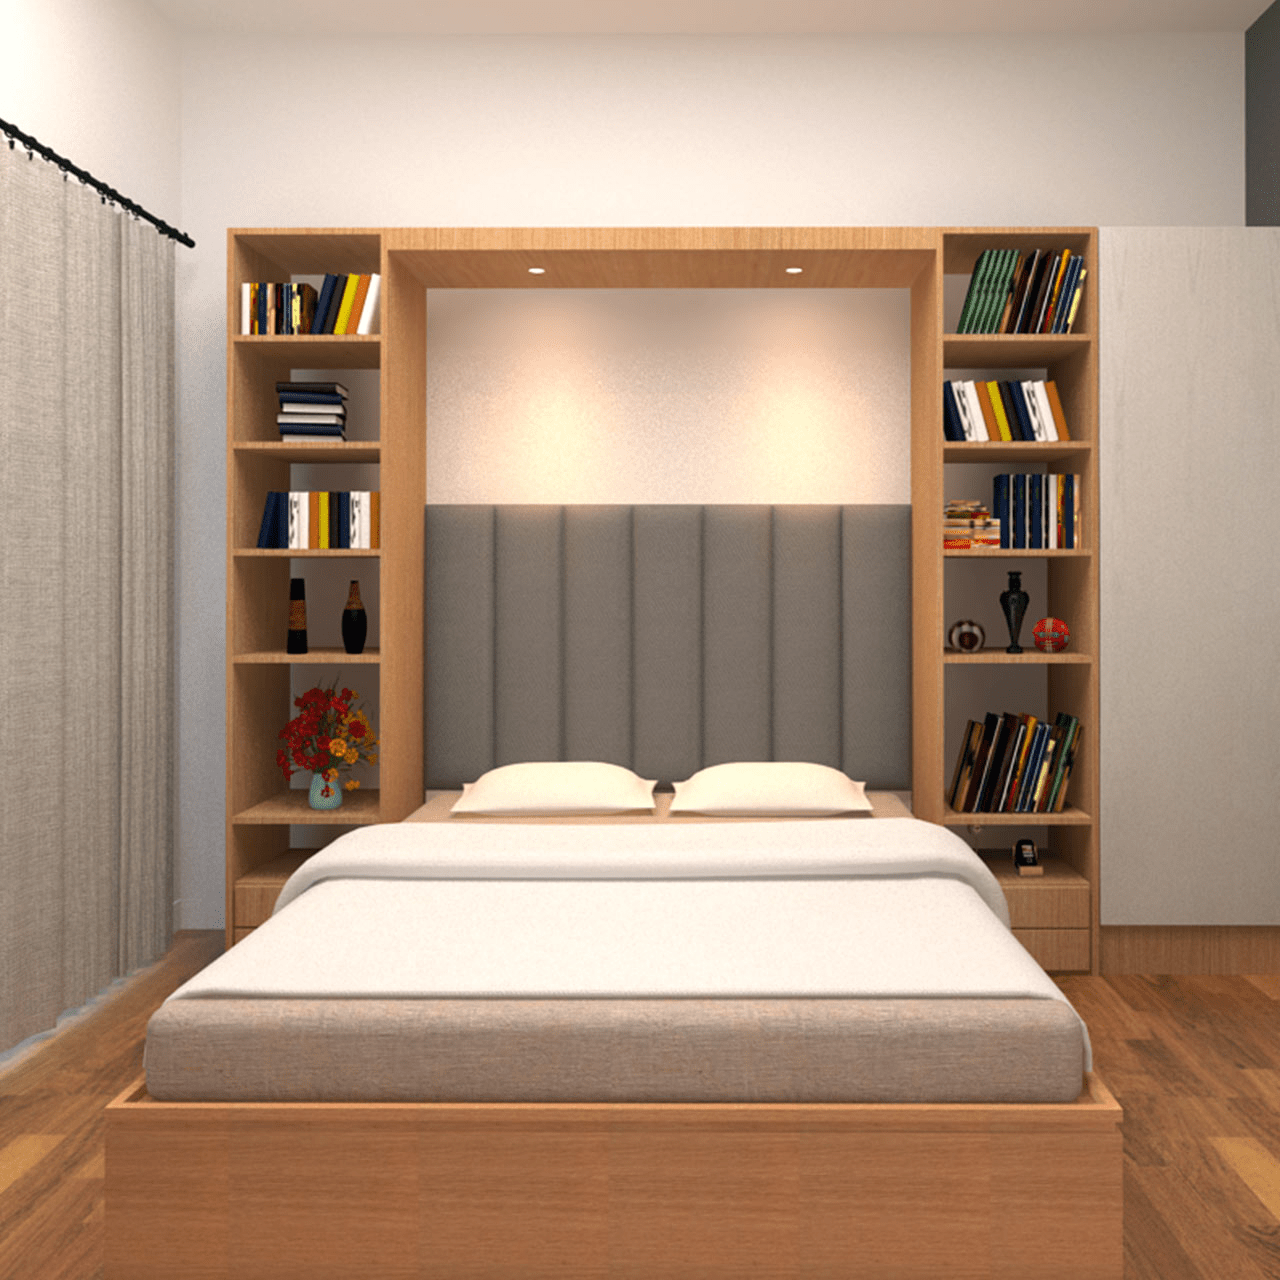 Unique Bedroom Headboard Ideas